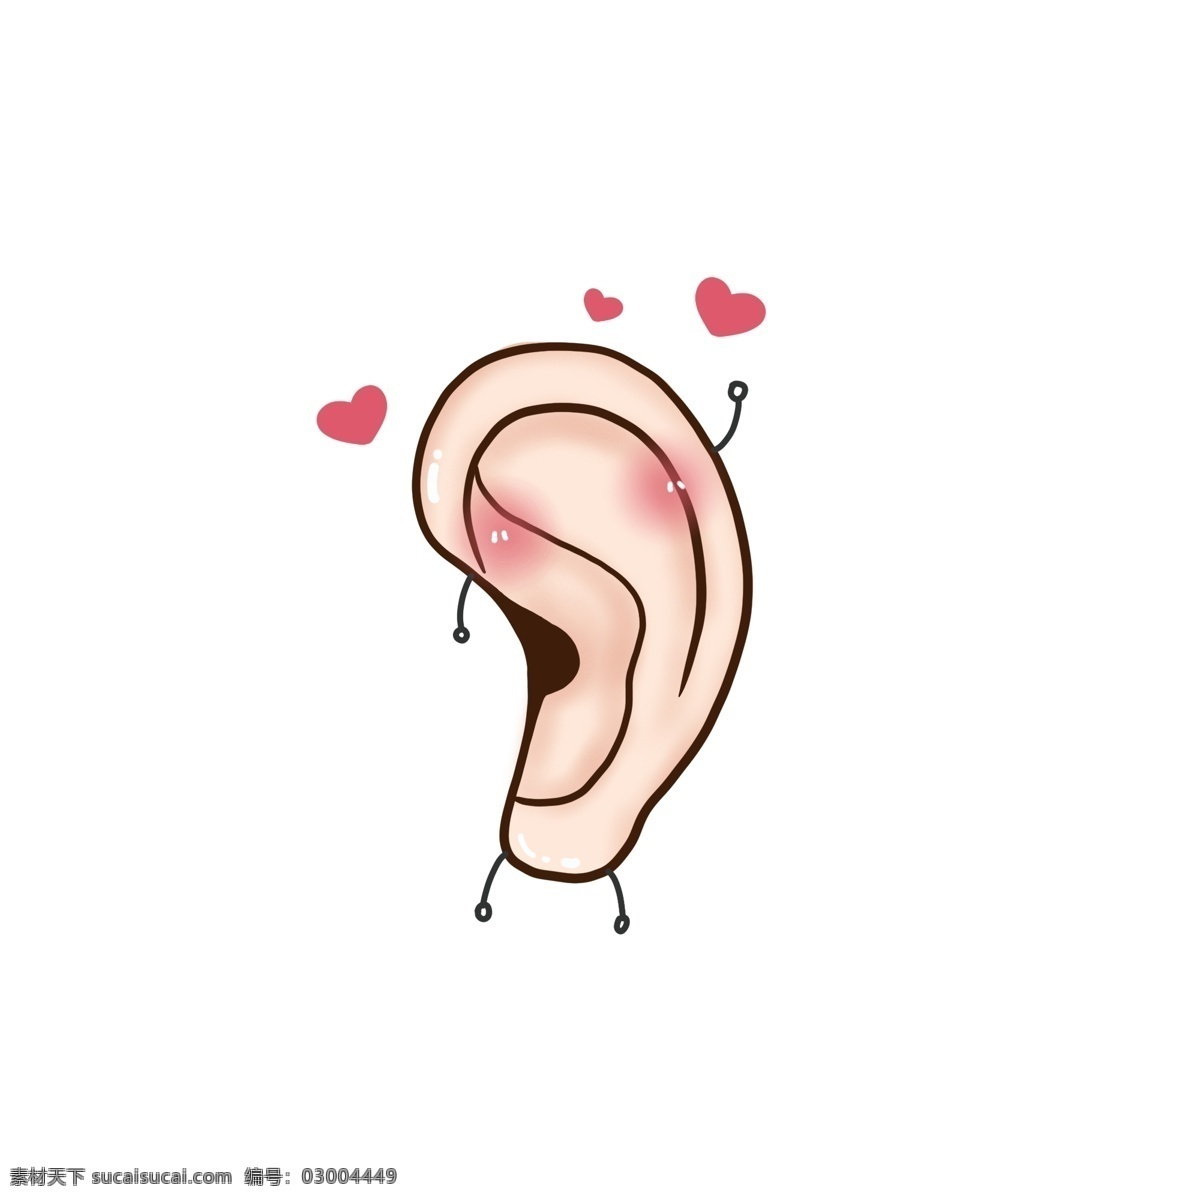 爱耳日 可爱 卡通 耳朵 元素 手绘耳朵 可爱耳朵 卡通耳朵 爱心